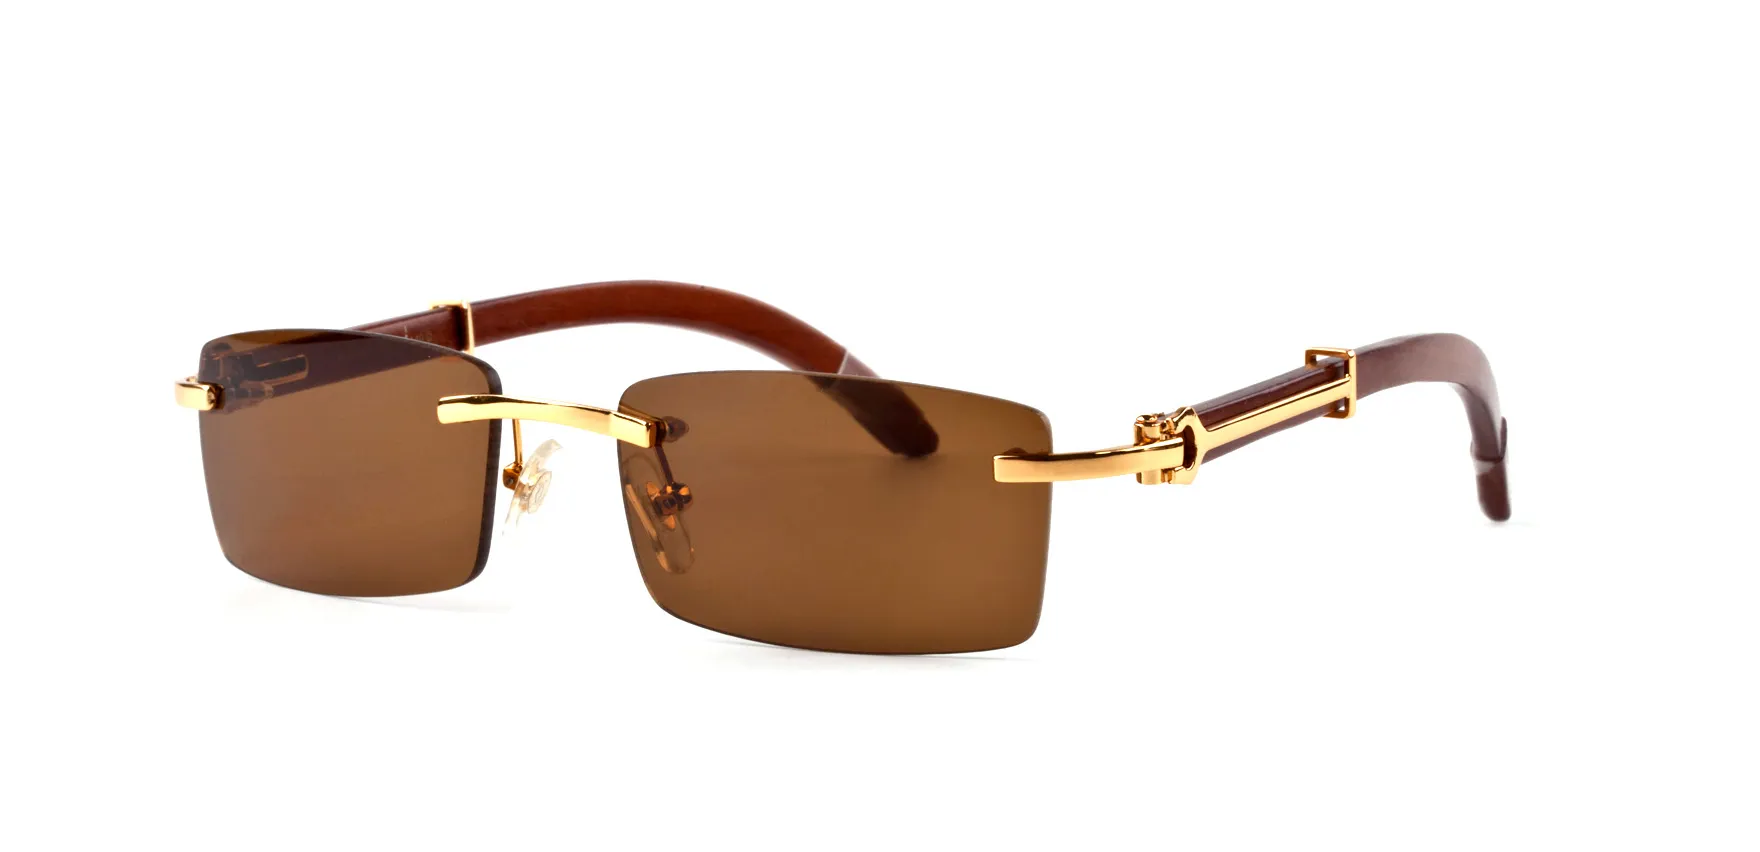 WholesaleNew прибытие 2018 бренд солнцезащитные очки для мужчин женщин рог буйвола очки без оправы дизайнер бамбук деревянные солнцезащитные очки с футляром люнет